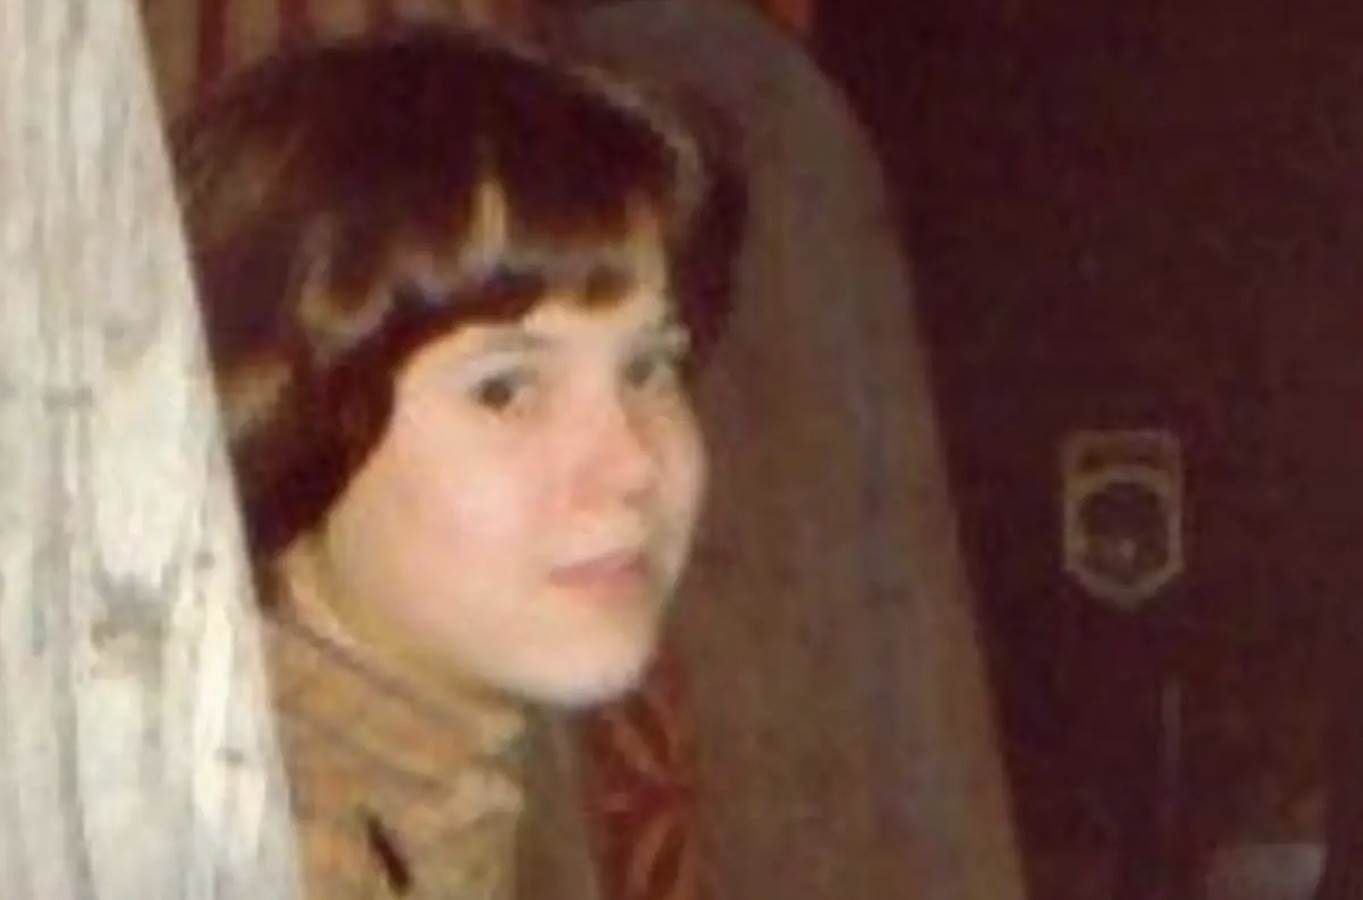  ubistvo djevojcice u san farncisku rasvijetljeno poslije 43 godine 